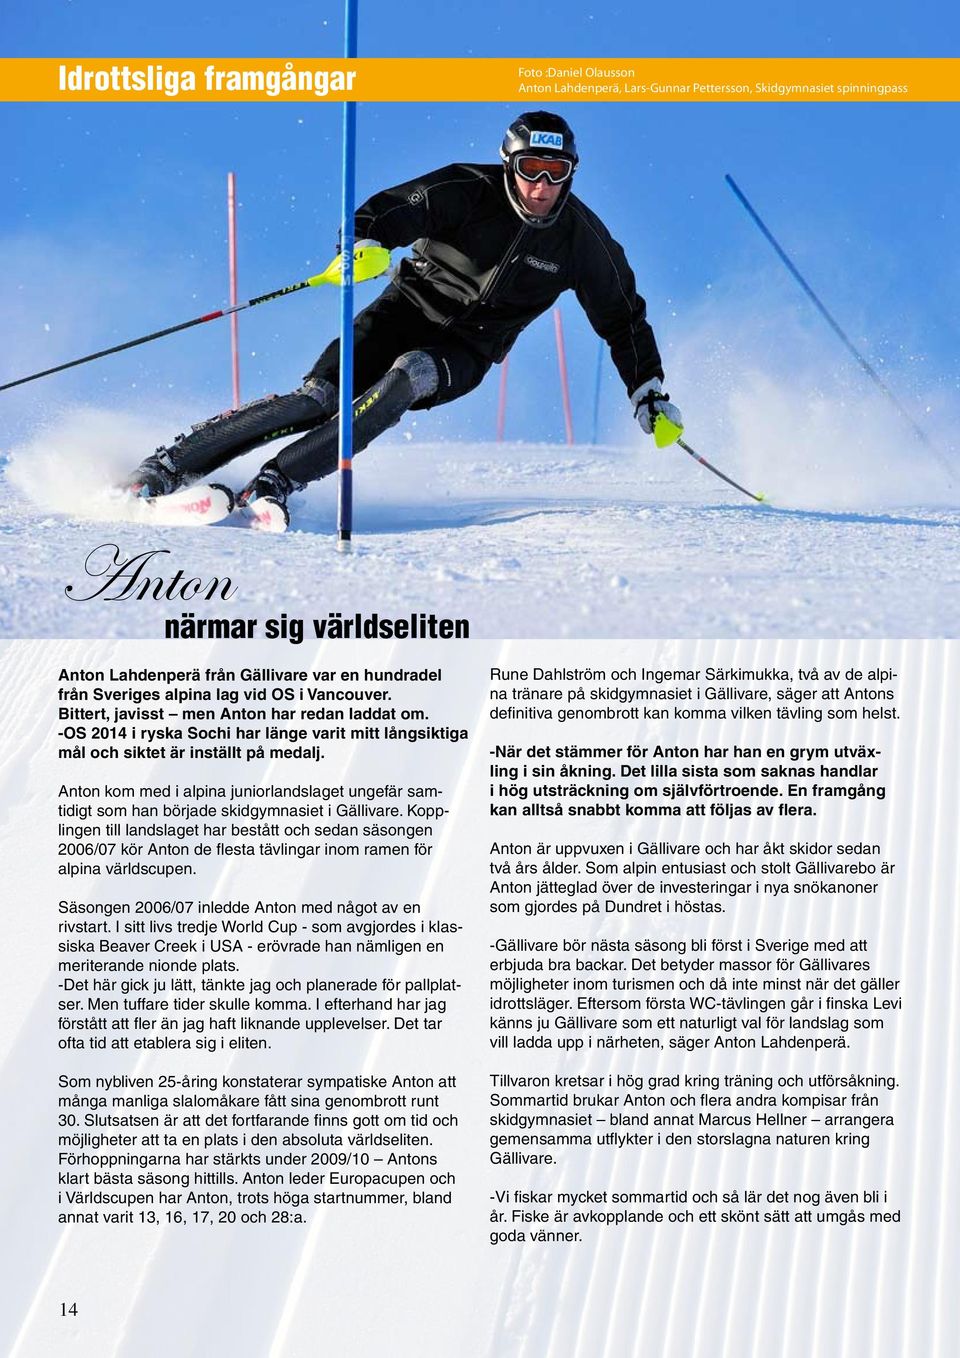 Anton kom med i alpina juniorlandslaget ungefär samtidigt som han började skidgymnasiet i Gällivare.